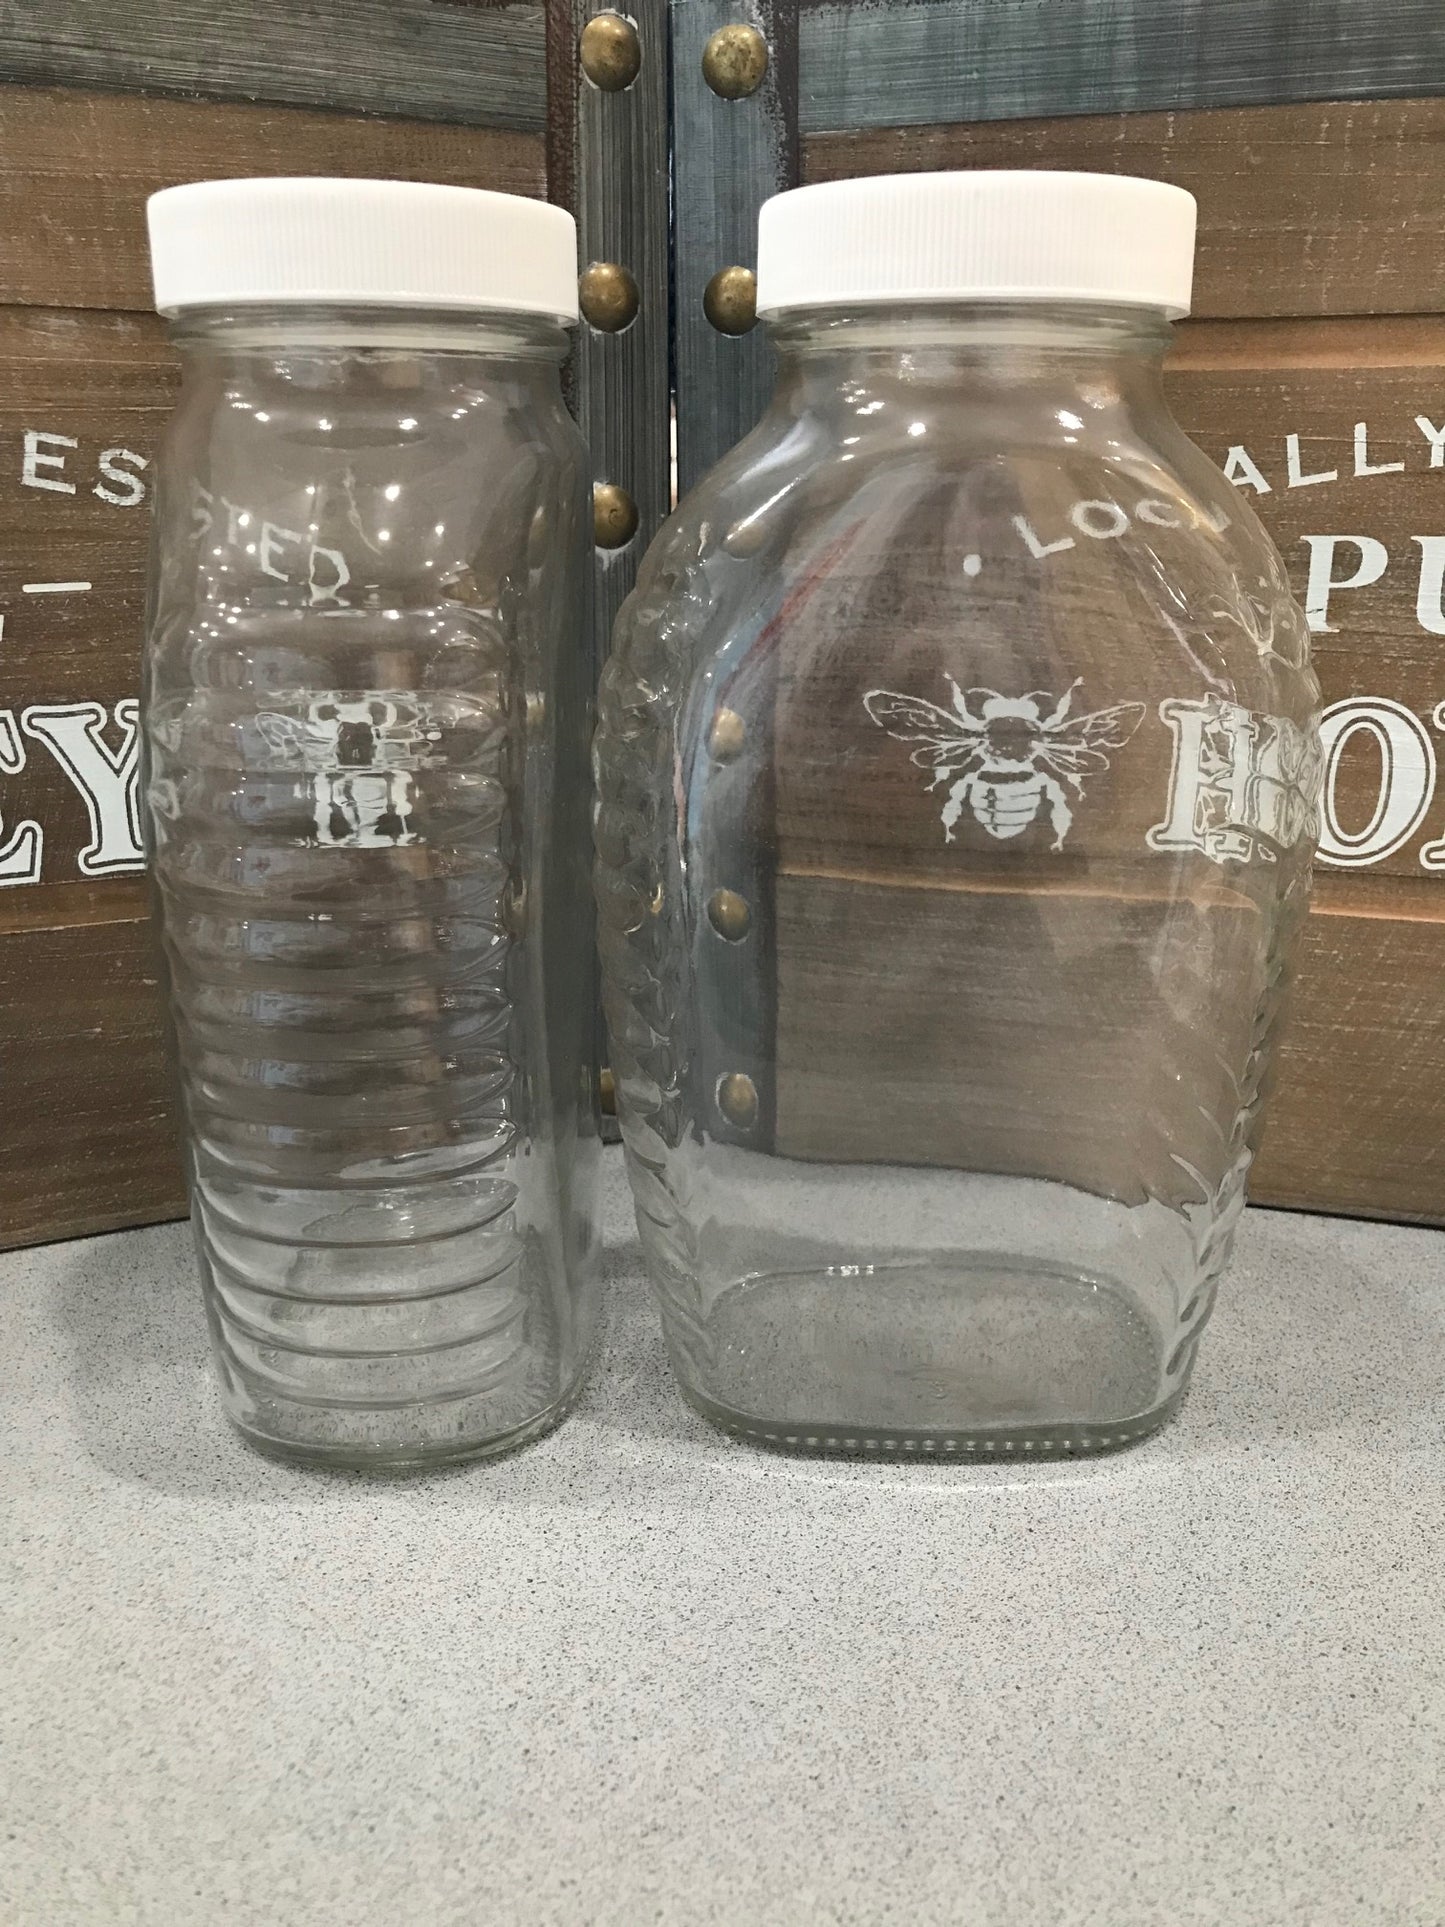 Queenline 4lb jars with lids